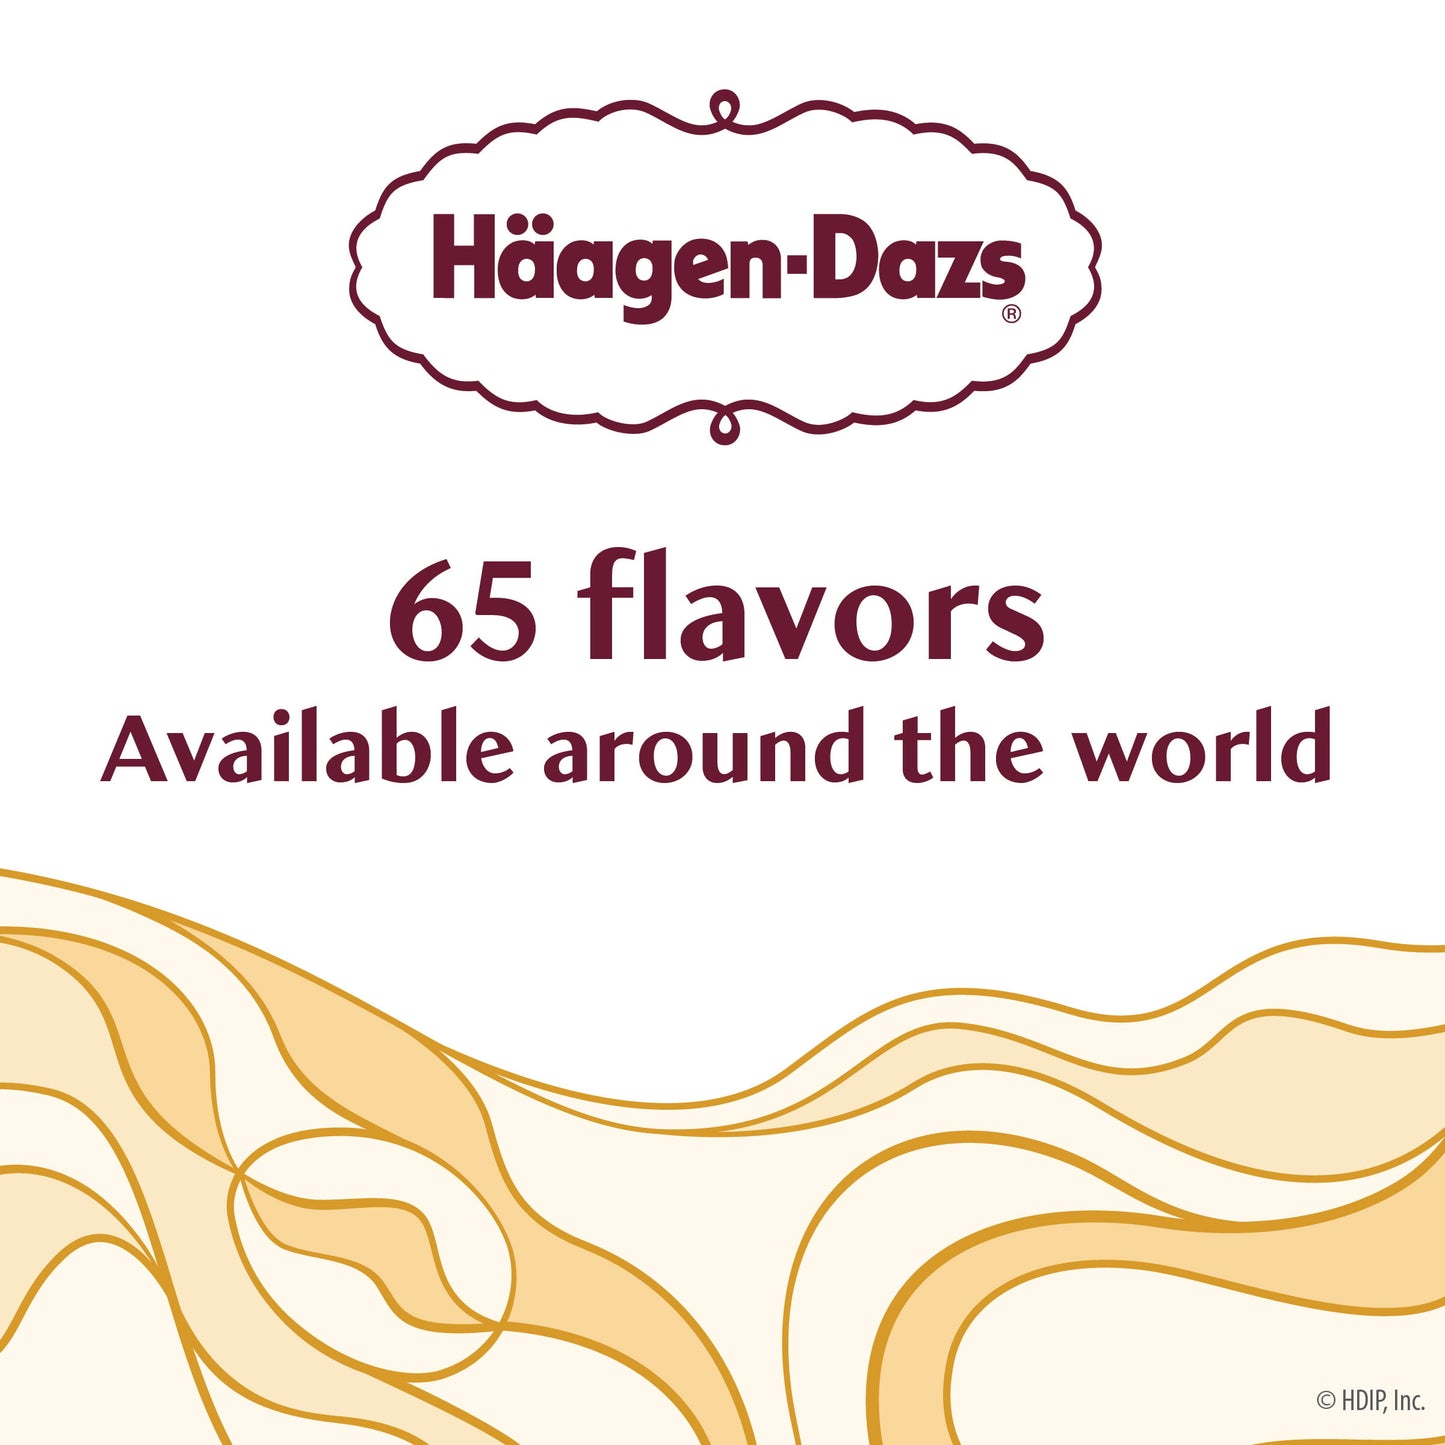 Haagen Dazs Chocolate Ice Cream, Gluten Free, Kosher, 1 Package, 14oz